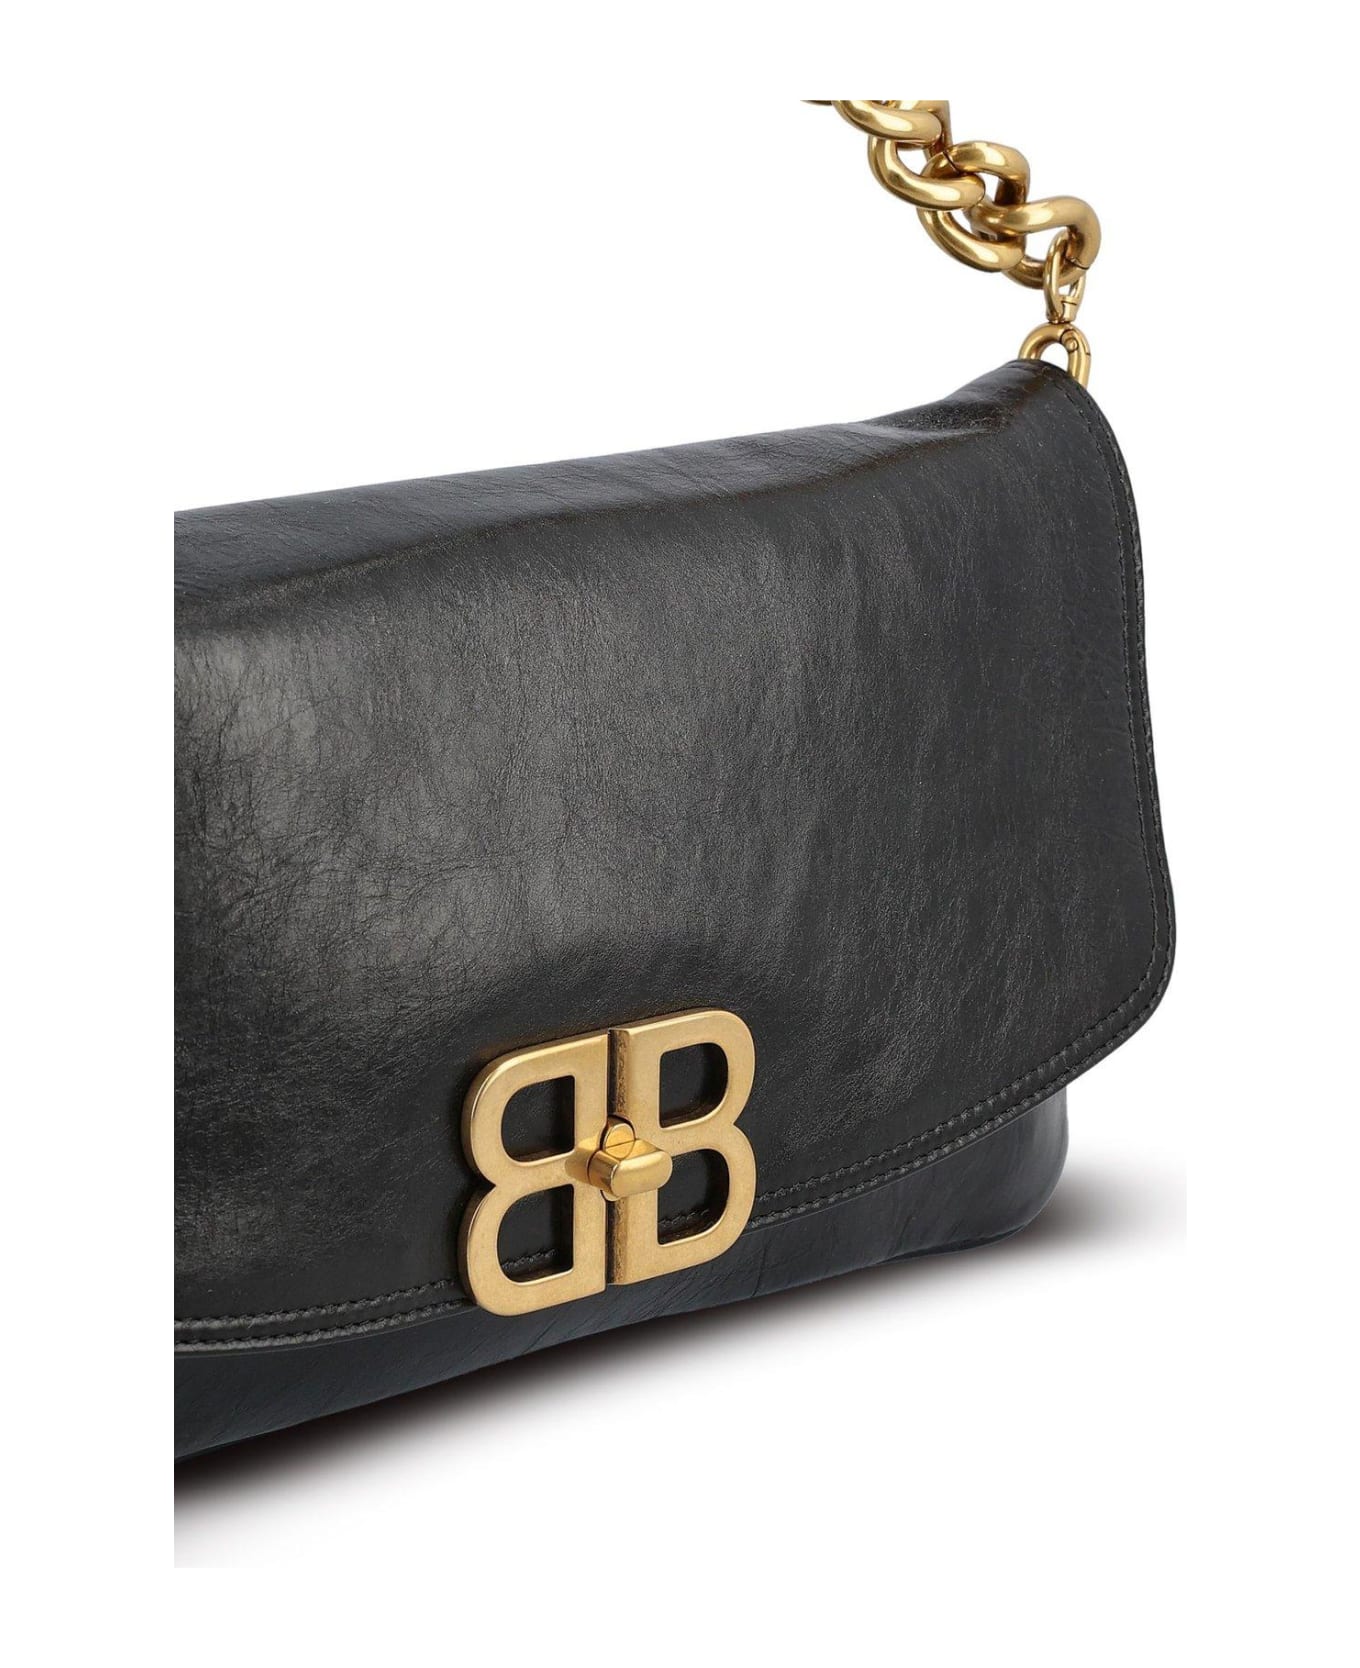 Balenciaga Bb Soft Medium Flap Shoulder Bag - Black